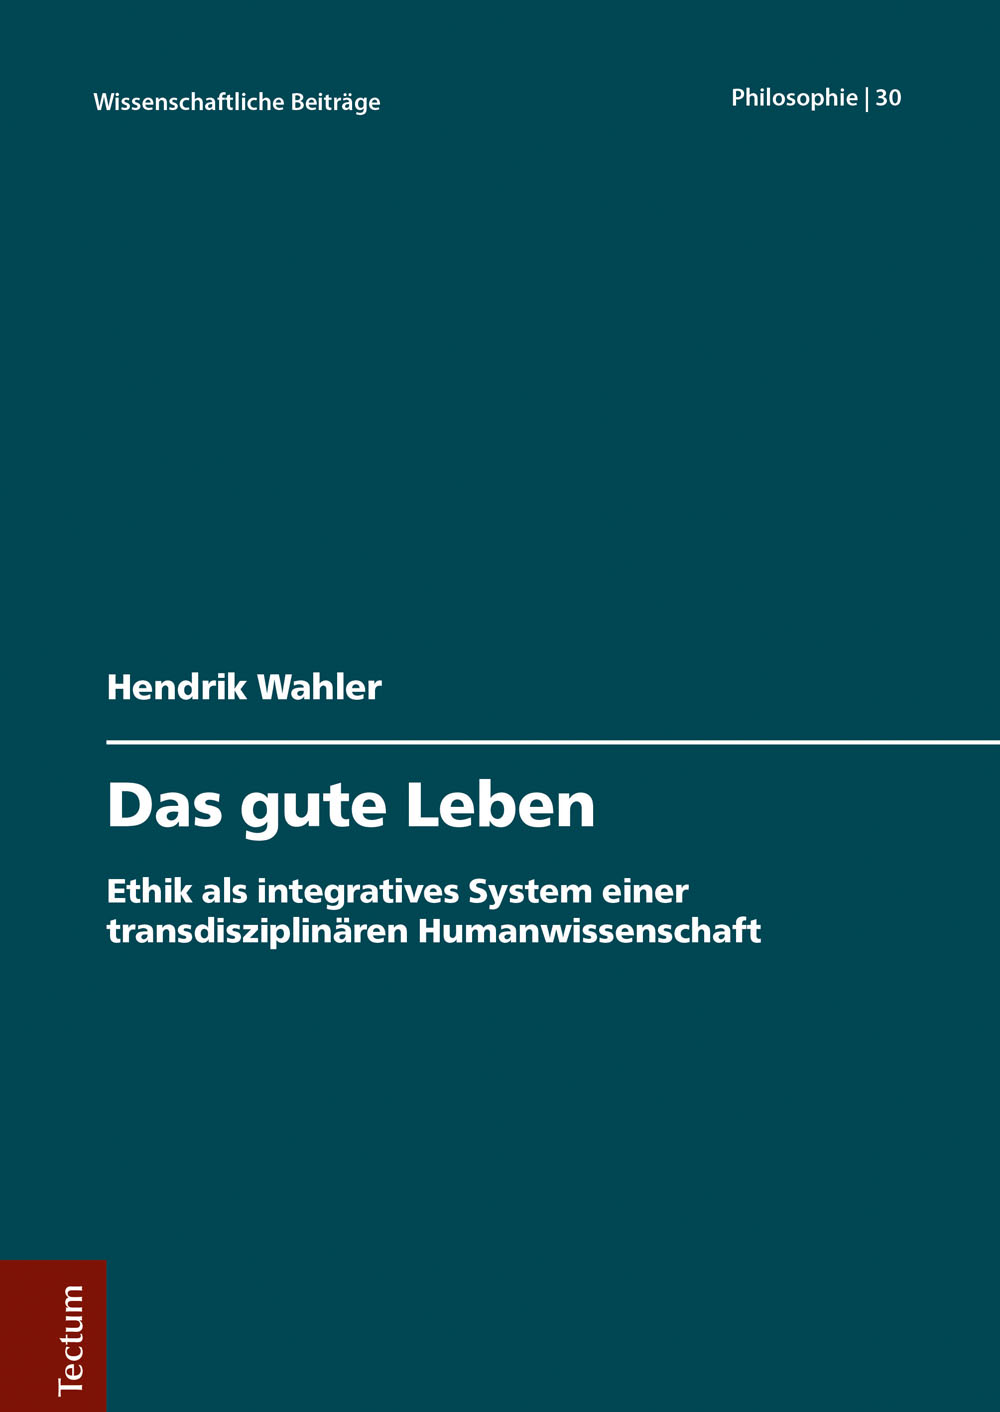 hendrik wahler dissertation